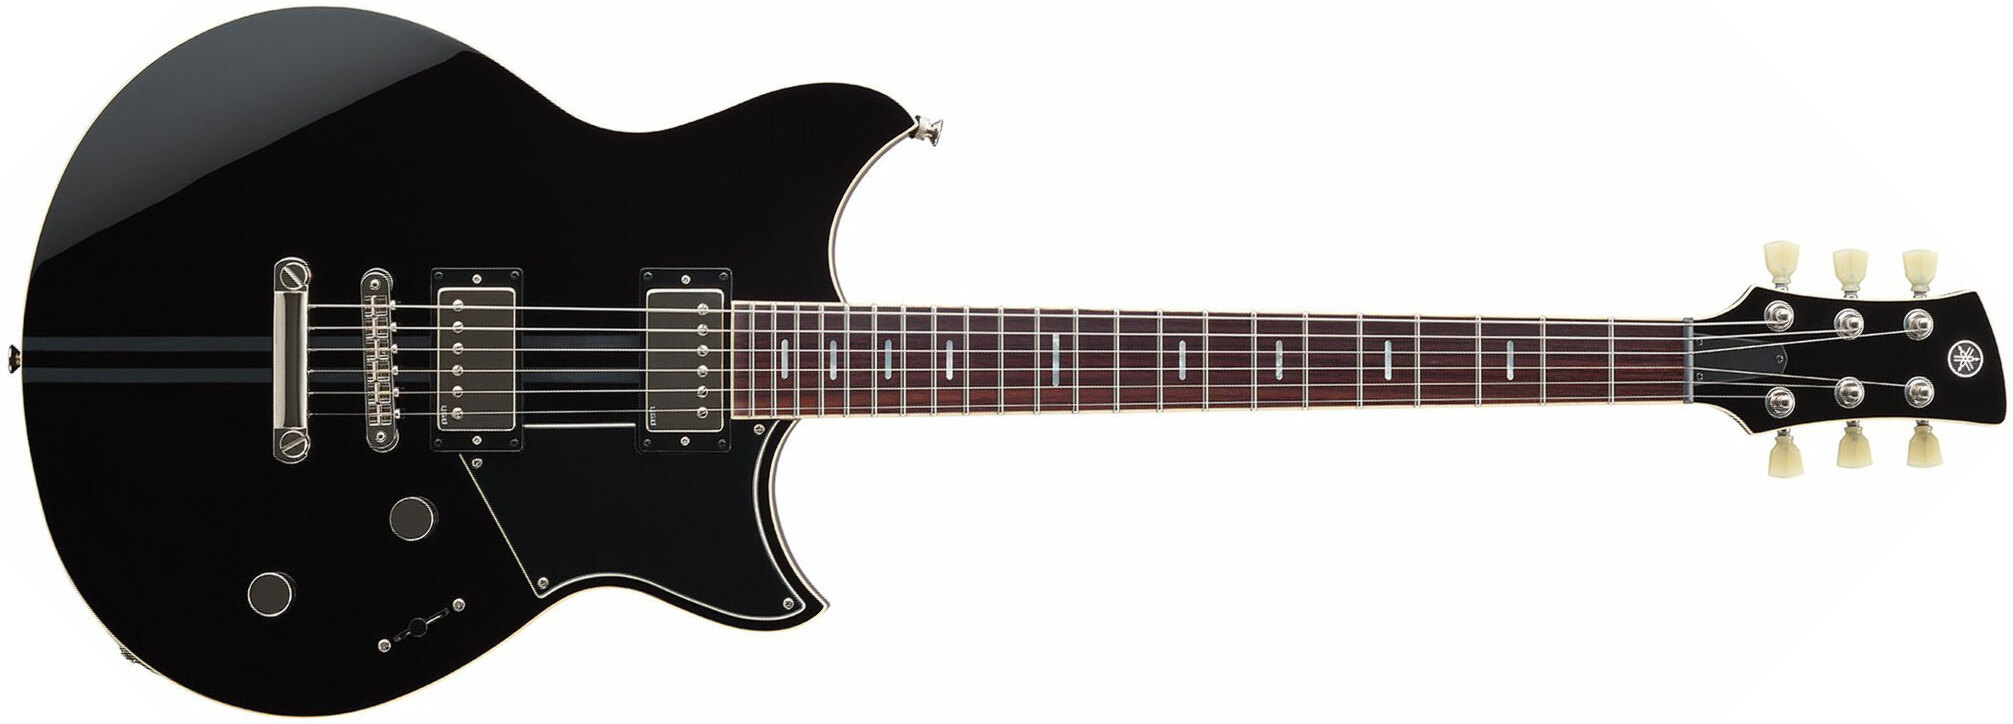 Yamaha Rss20 Revstar Standard Hh Ht Rw - Black - Guitarra eléctrica de doble corte. - Main picture